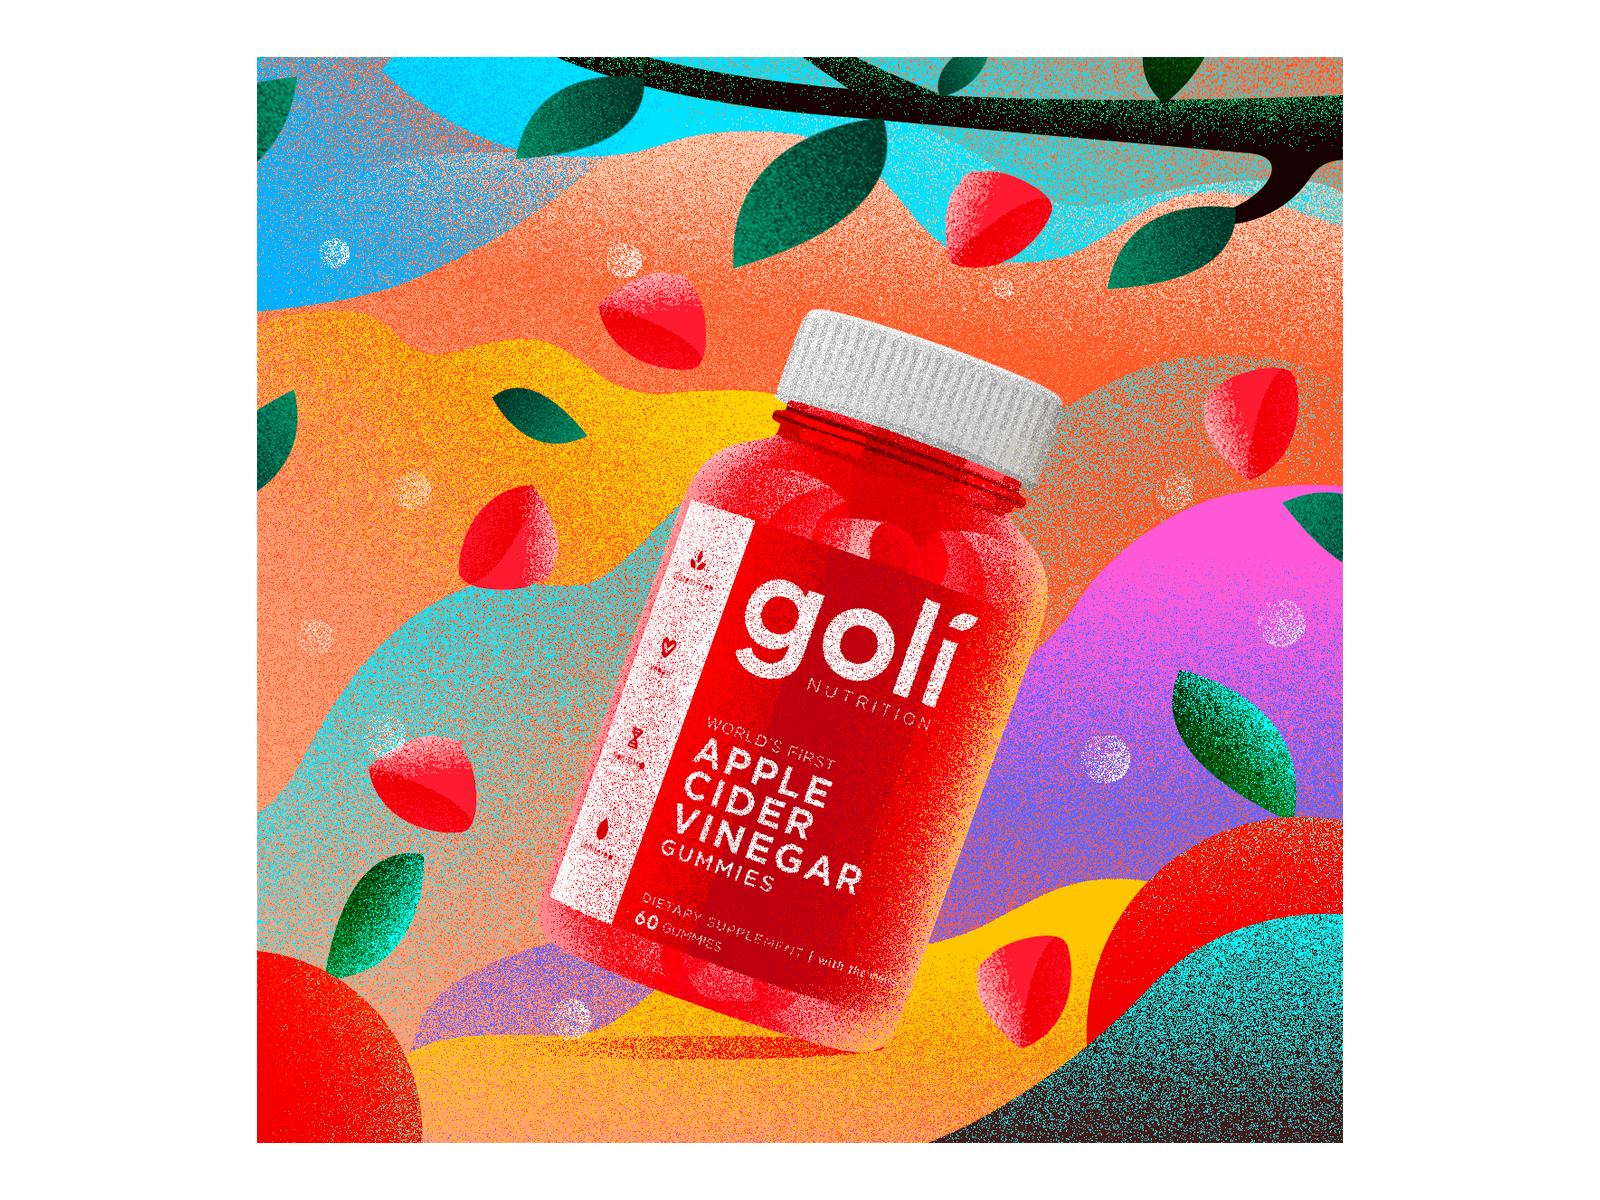 Goli - Apple Cider Vinegar braches colourful berries design digitalart grainy gummies illustration illustrator leaves packaging photoshop social media post vector